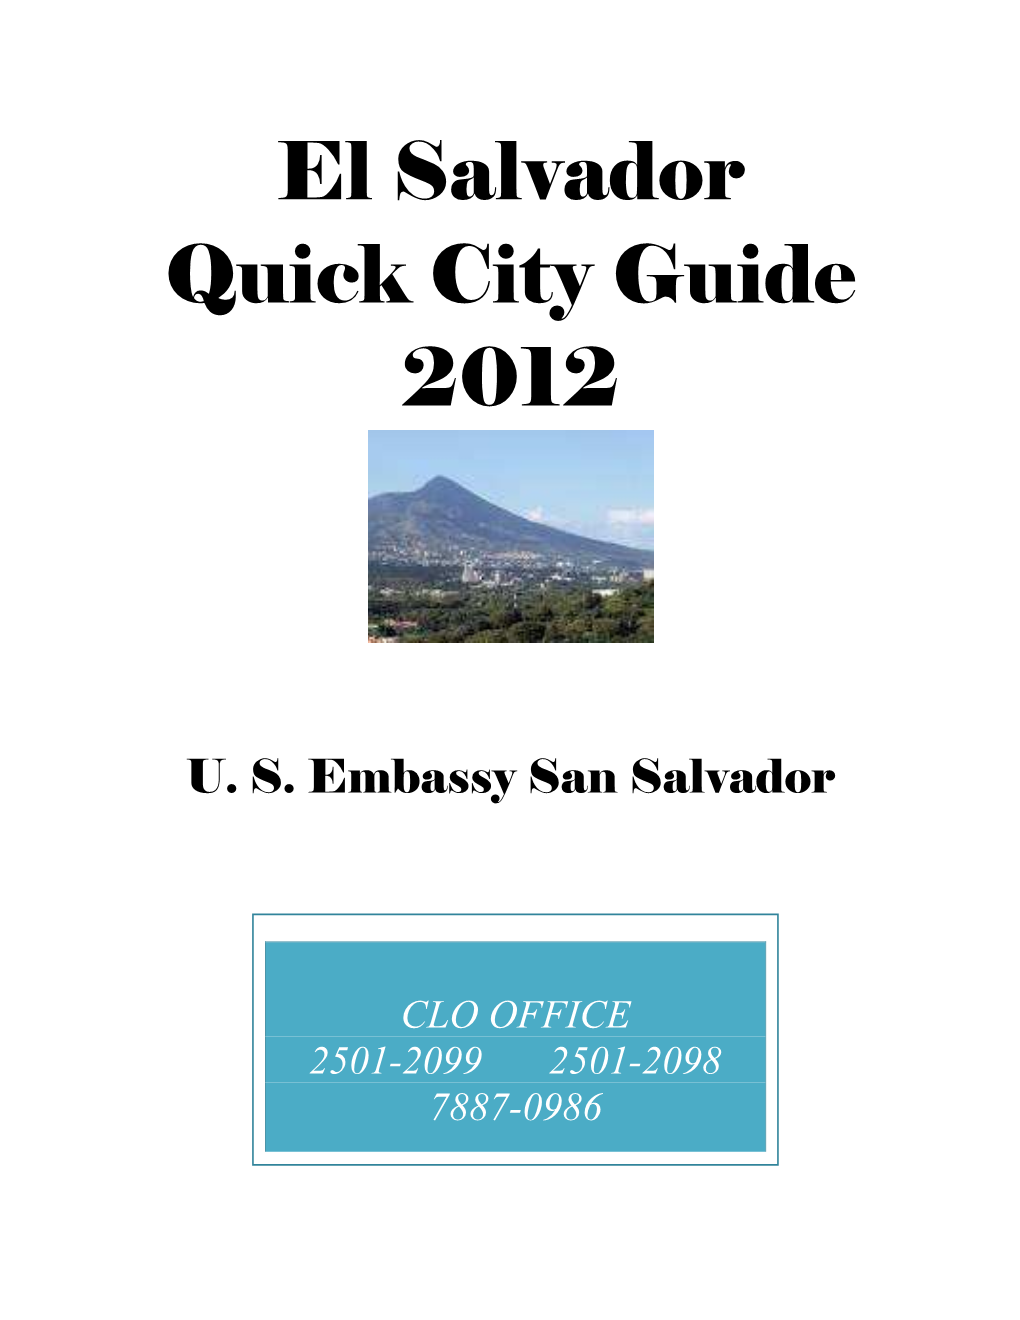 El Salvador Quick City Guide 2012